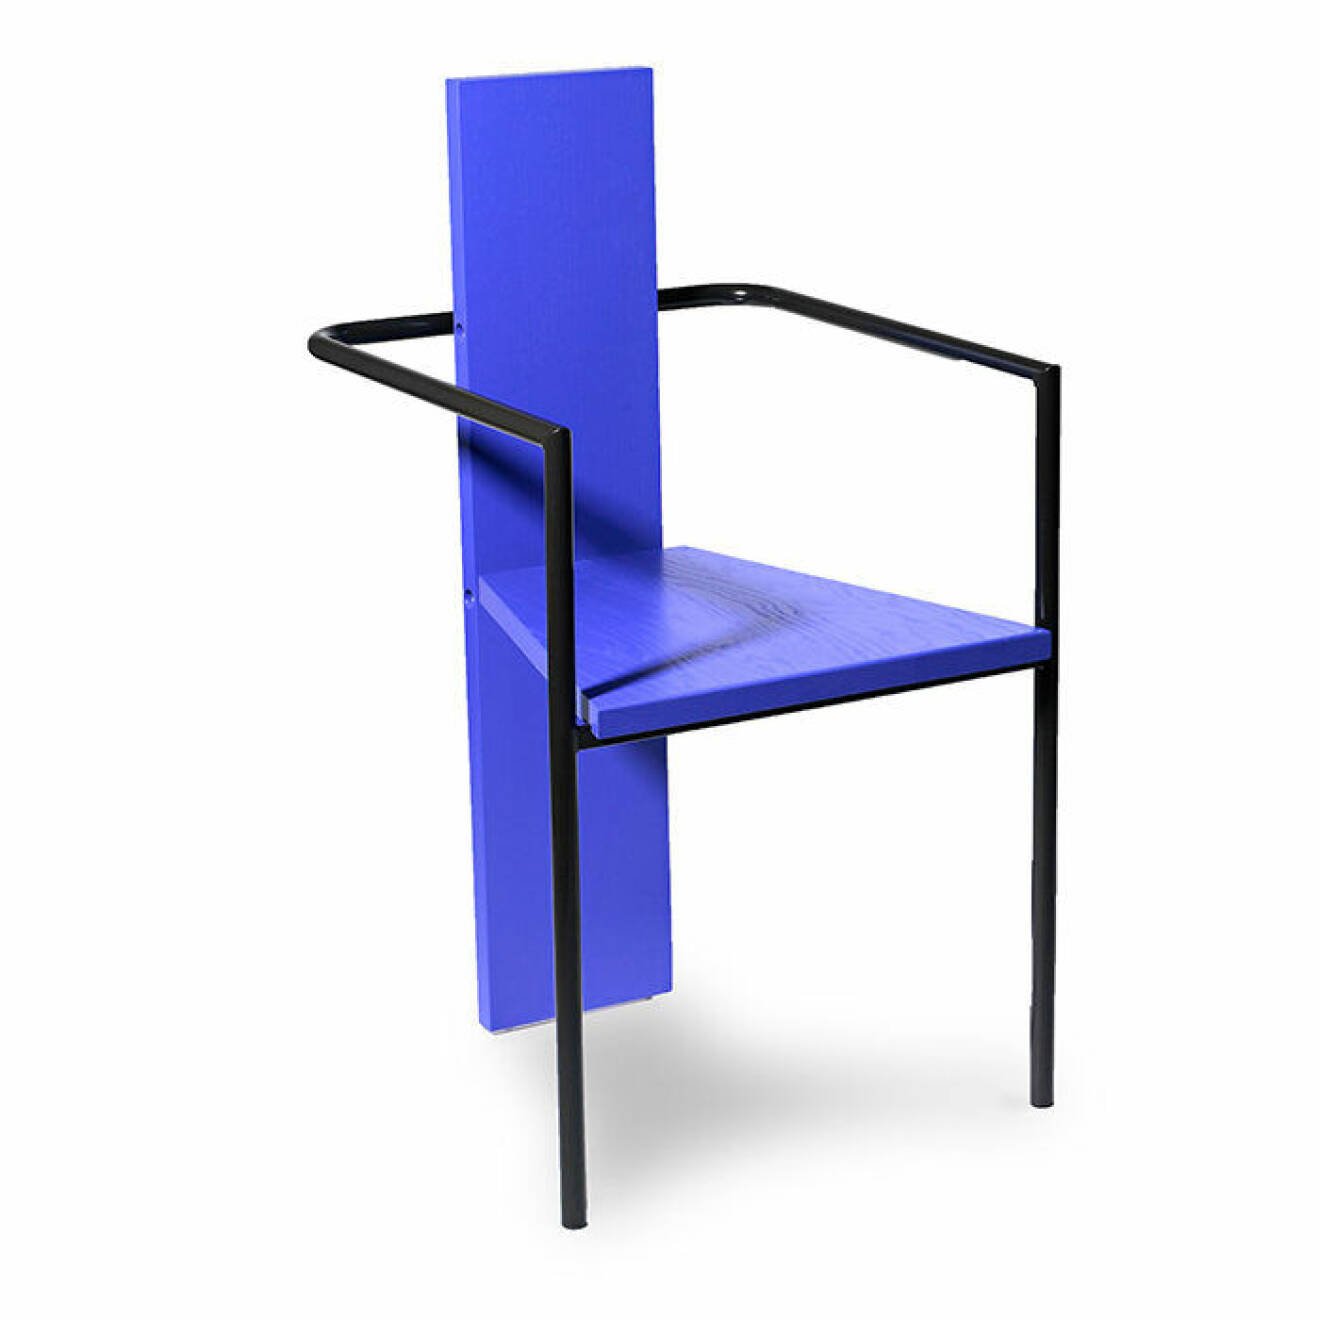 Concrete stol från Källemo